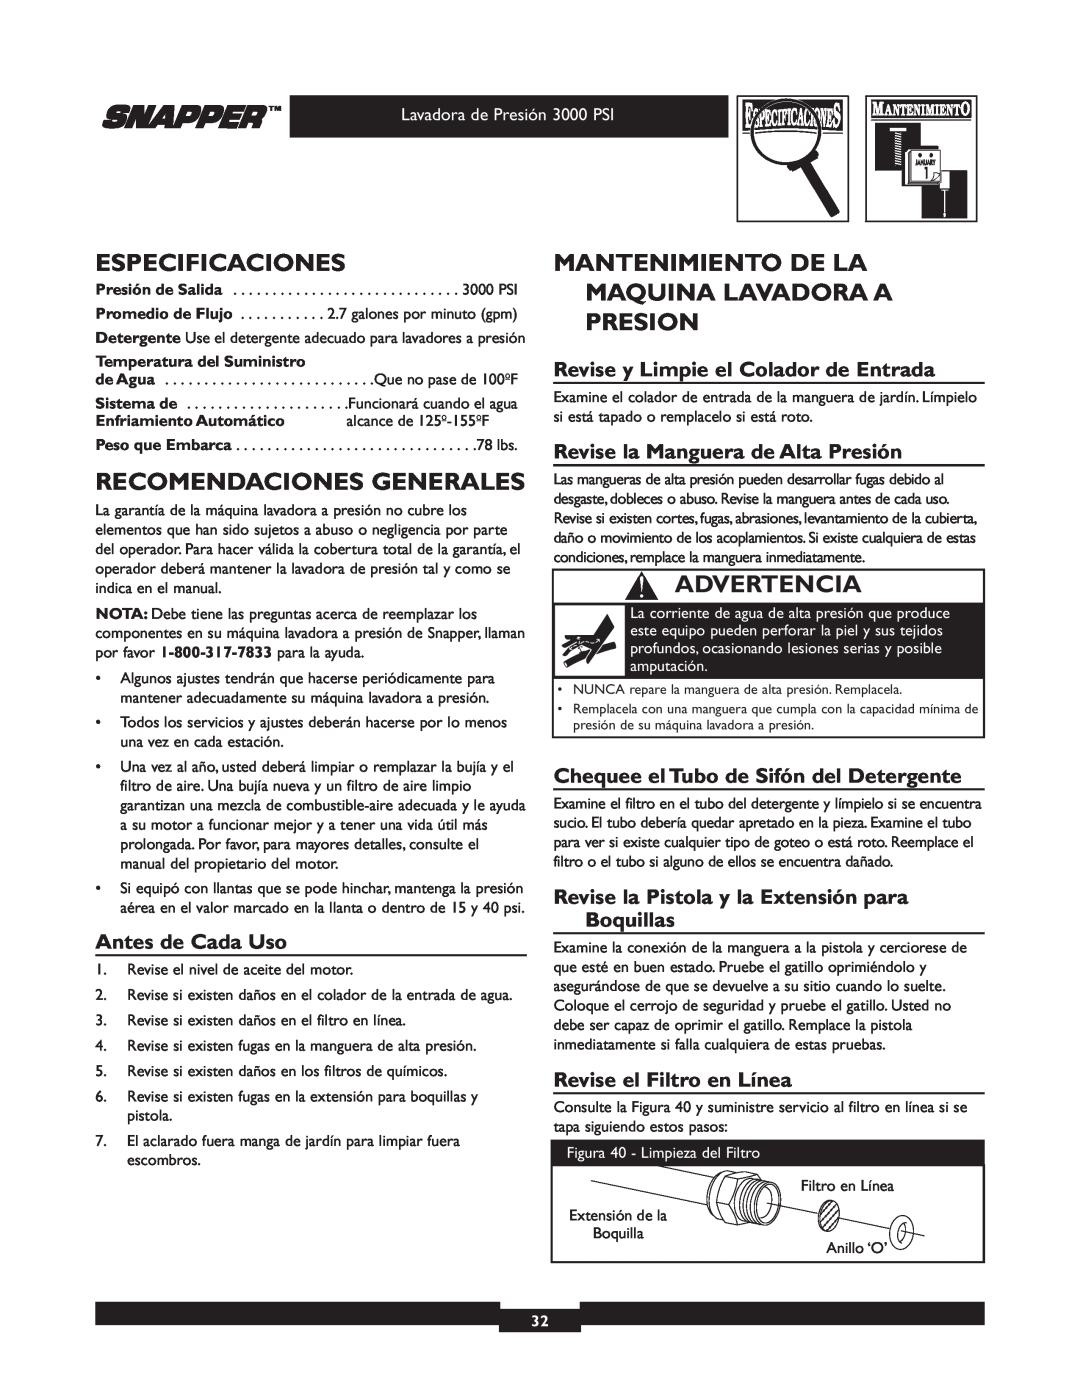 Snapper 020231 Especificaciones, Recomendaciones Generales, Mantenimiento De La Maquina Lavadora A Presion, Advertencia 